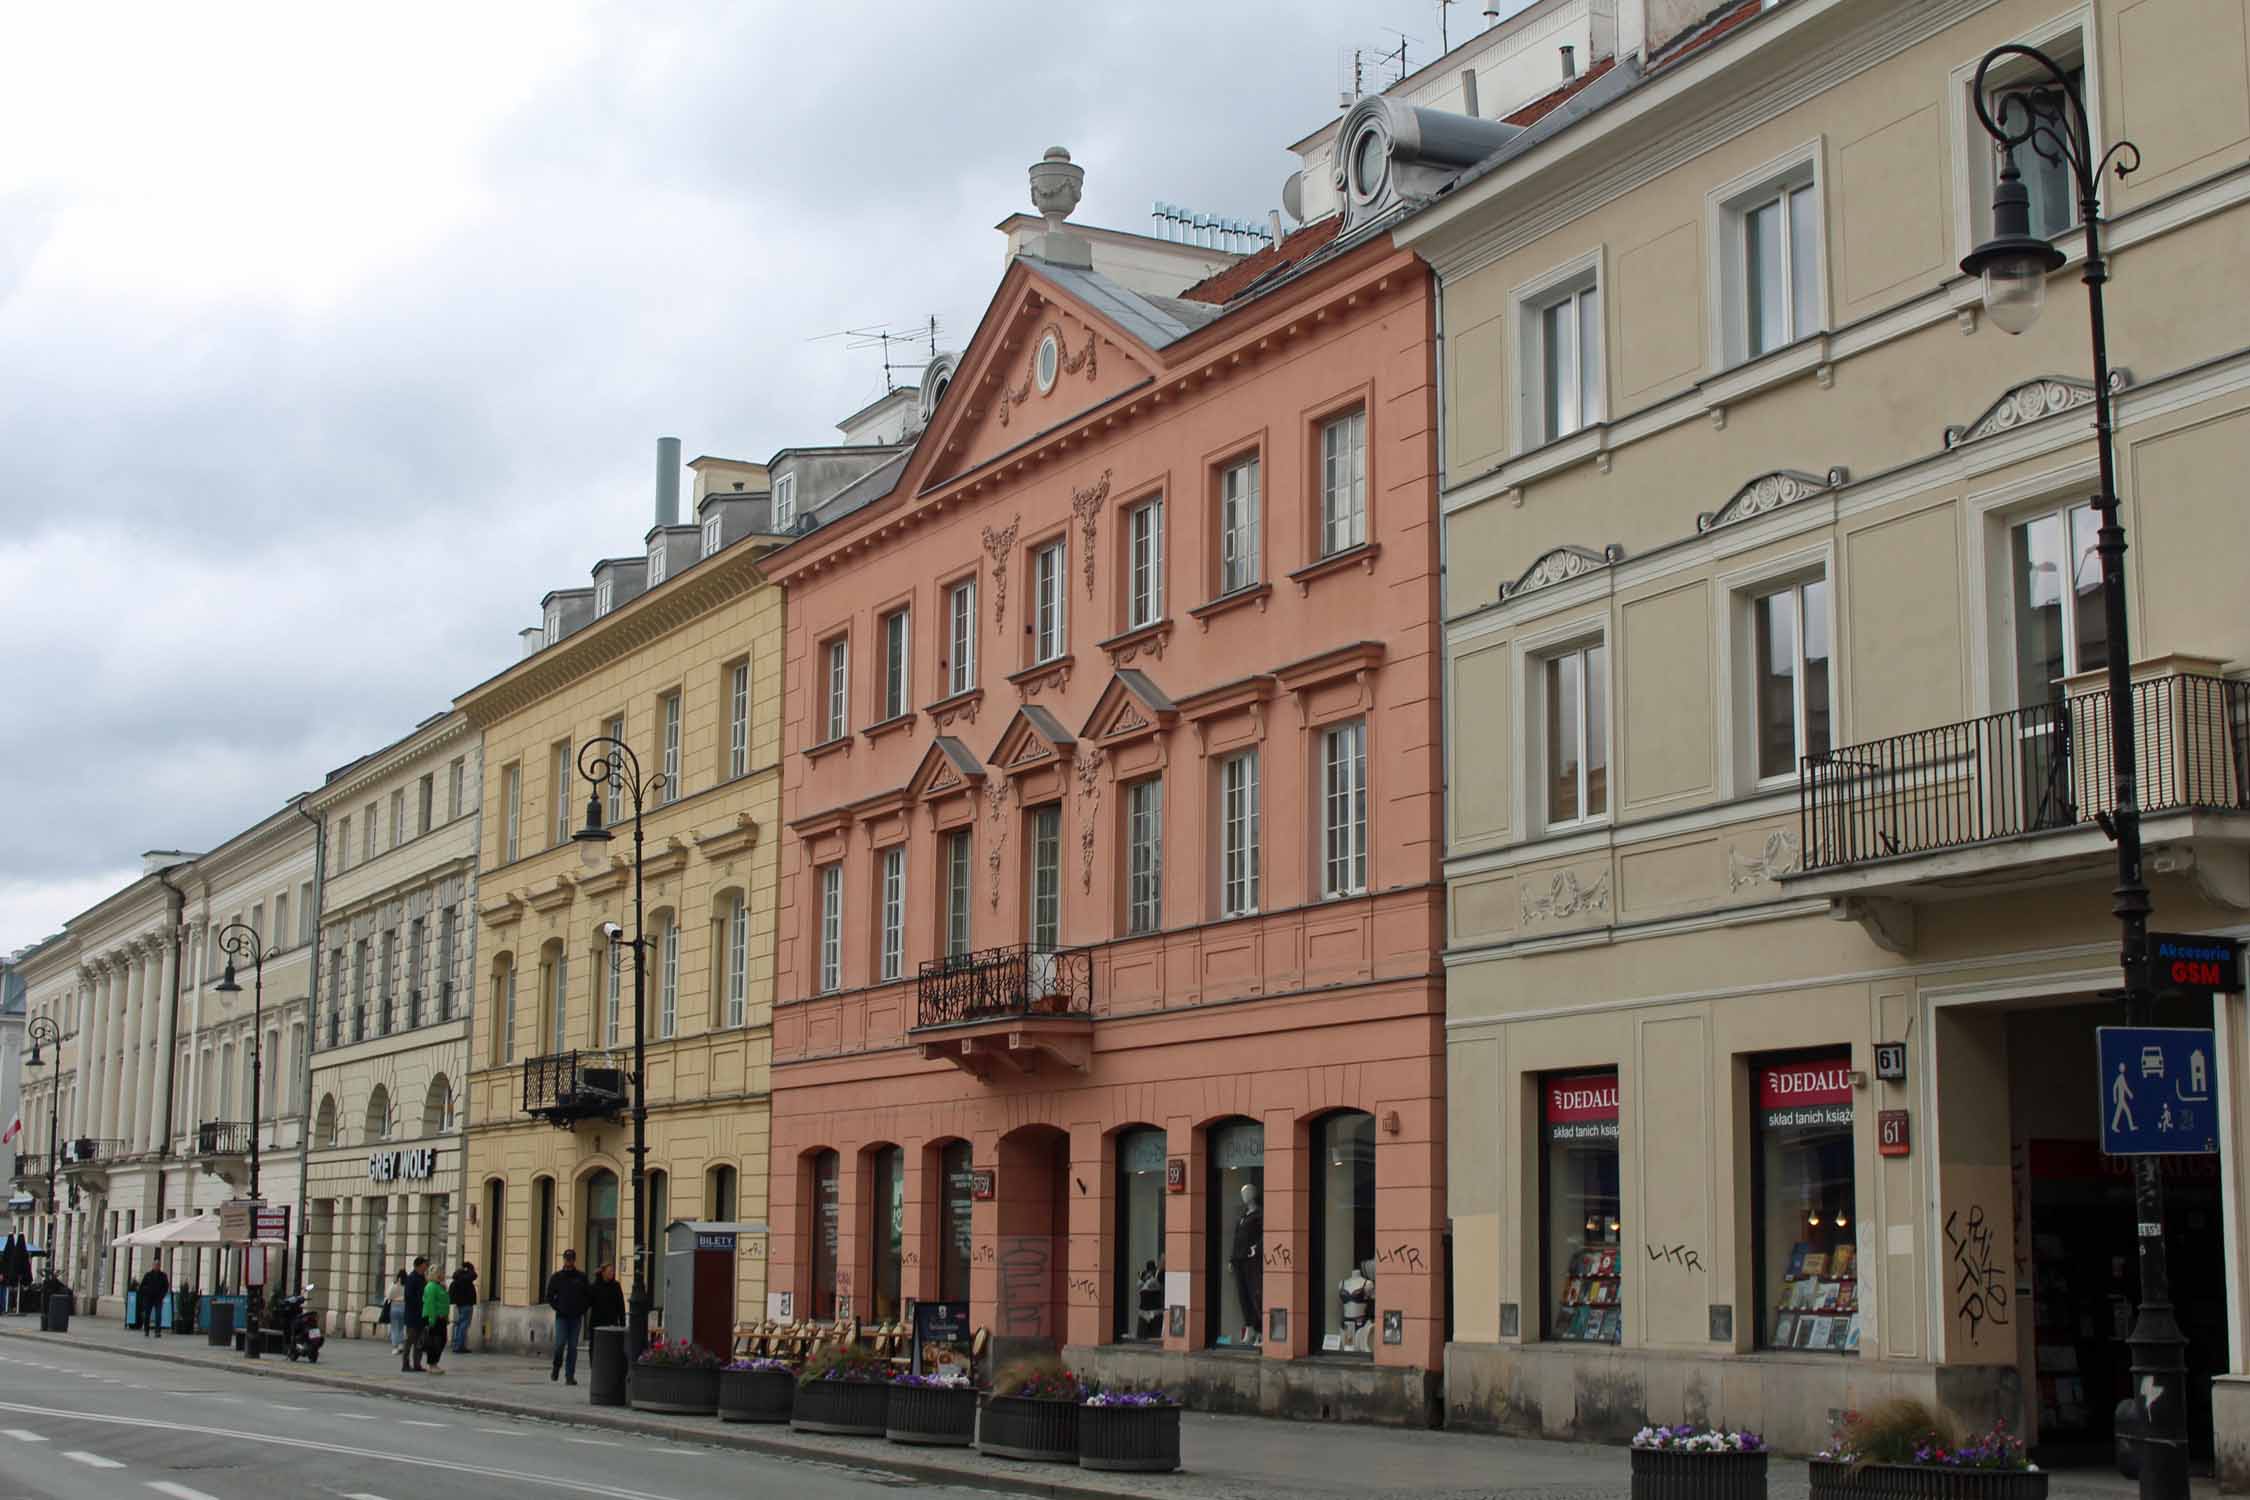 Varsovie, rue Krakowskie Przedmiescie, façades colorées